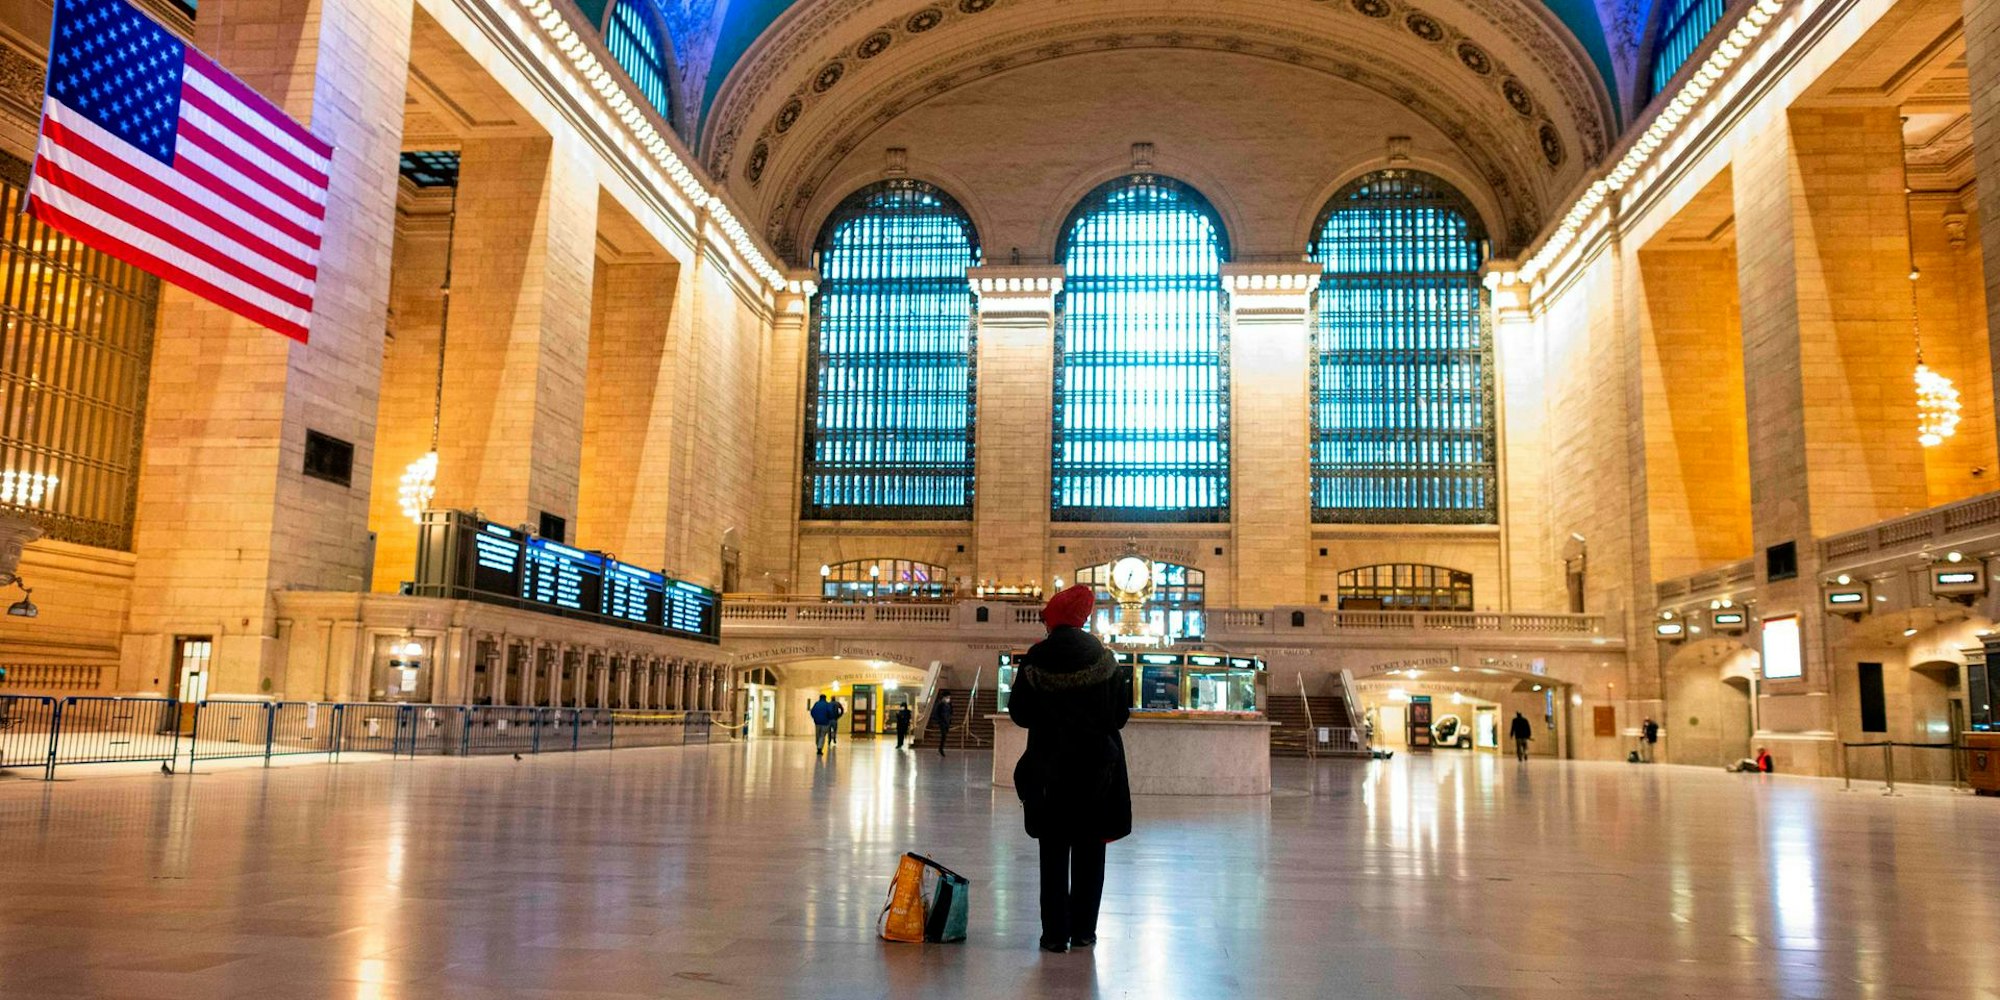 Ort der Leere, der in normalen Zeiten von Menschen überflutet ist: Die Grand Central Station, der Hauptbahnhof von New York.